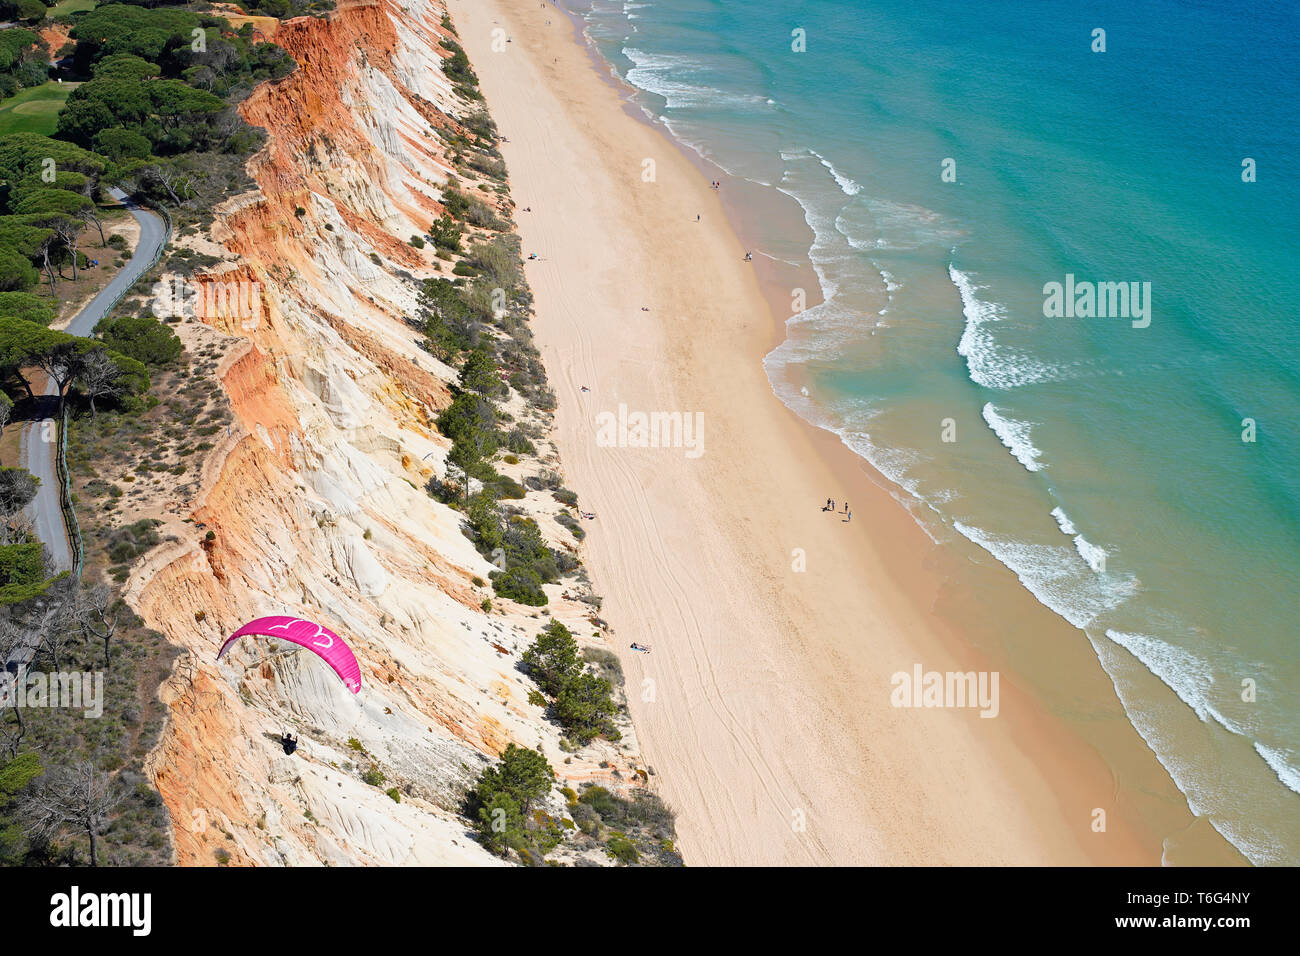 VISTA AÉREA. Parapente utilizando la brisa marina para elevarse a lo largo de un colorido acantilado junto al mar. Praia da Falésia, Albufeira, Algarve, Portugal. Foto de stock